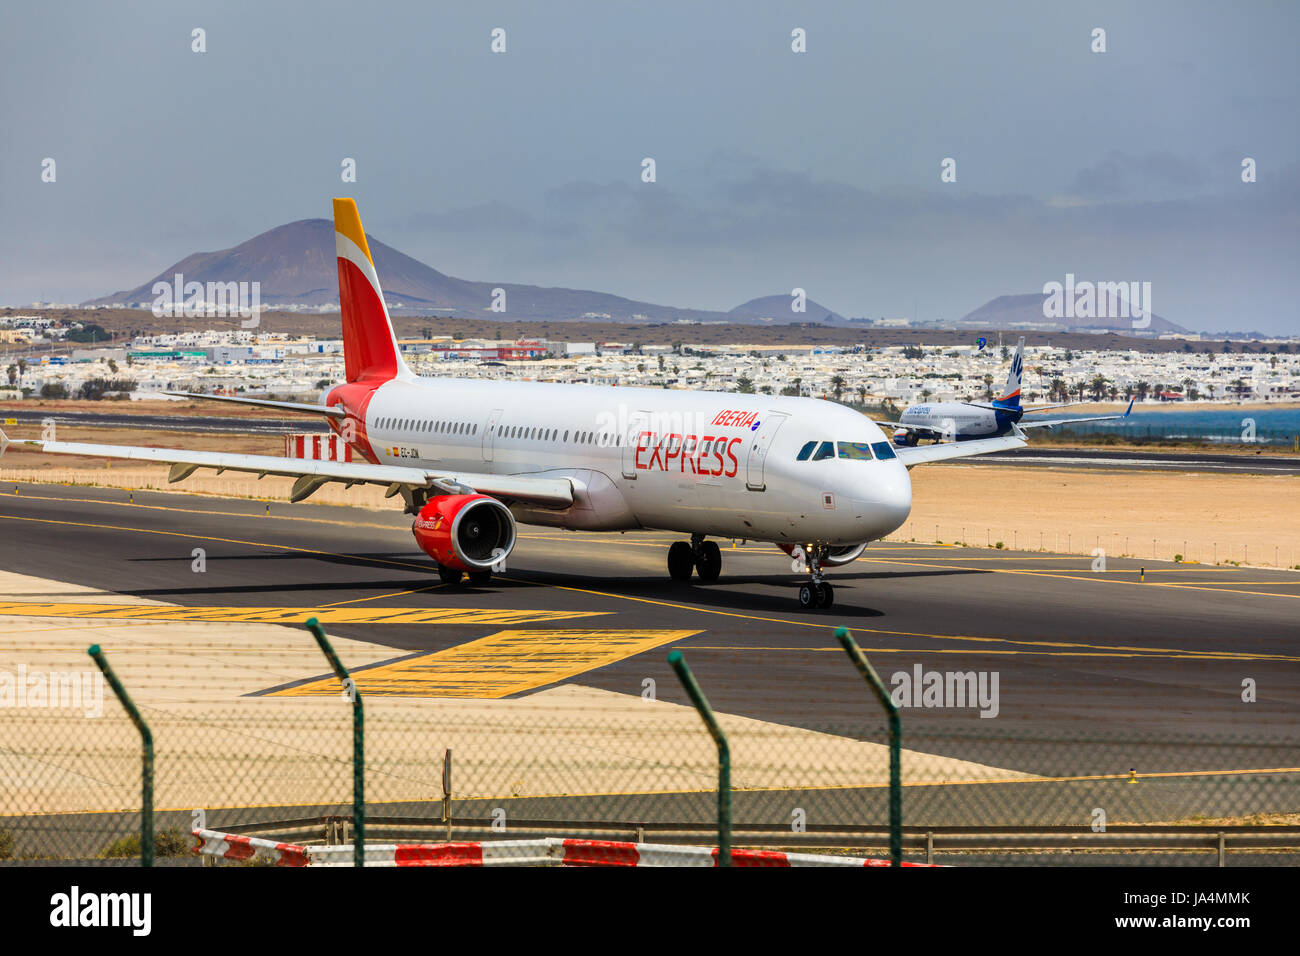 ARECIFE, Spagna - Aprile 15 2017: Airbus A321 di IBERIA con la registrazione CE-JOM pronto al decollo a Lanzarote Airport Foto Stock